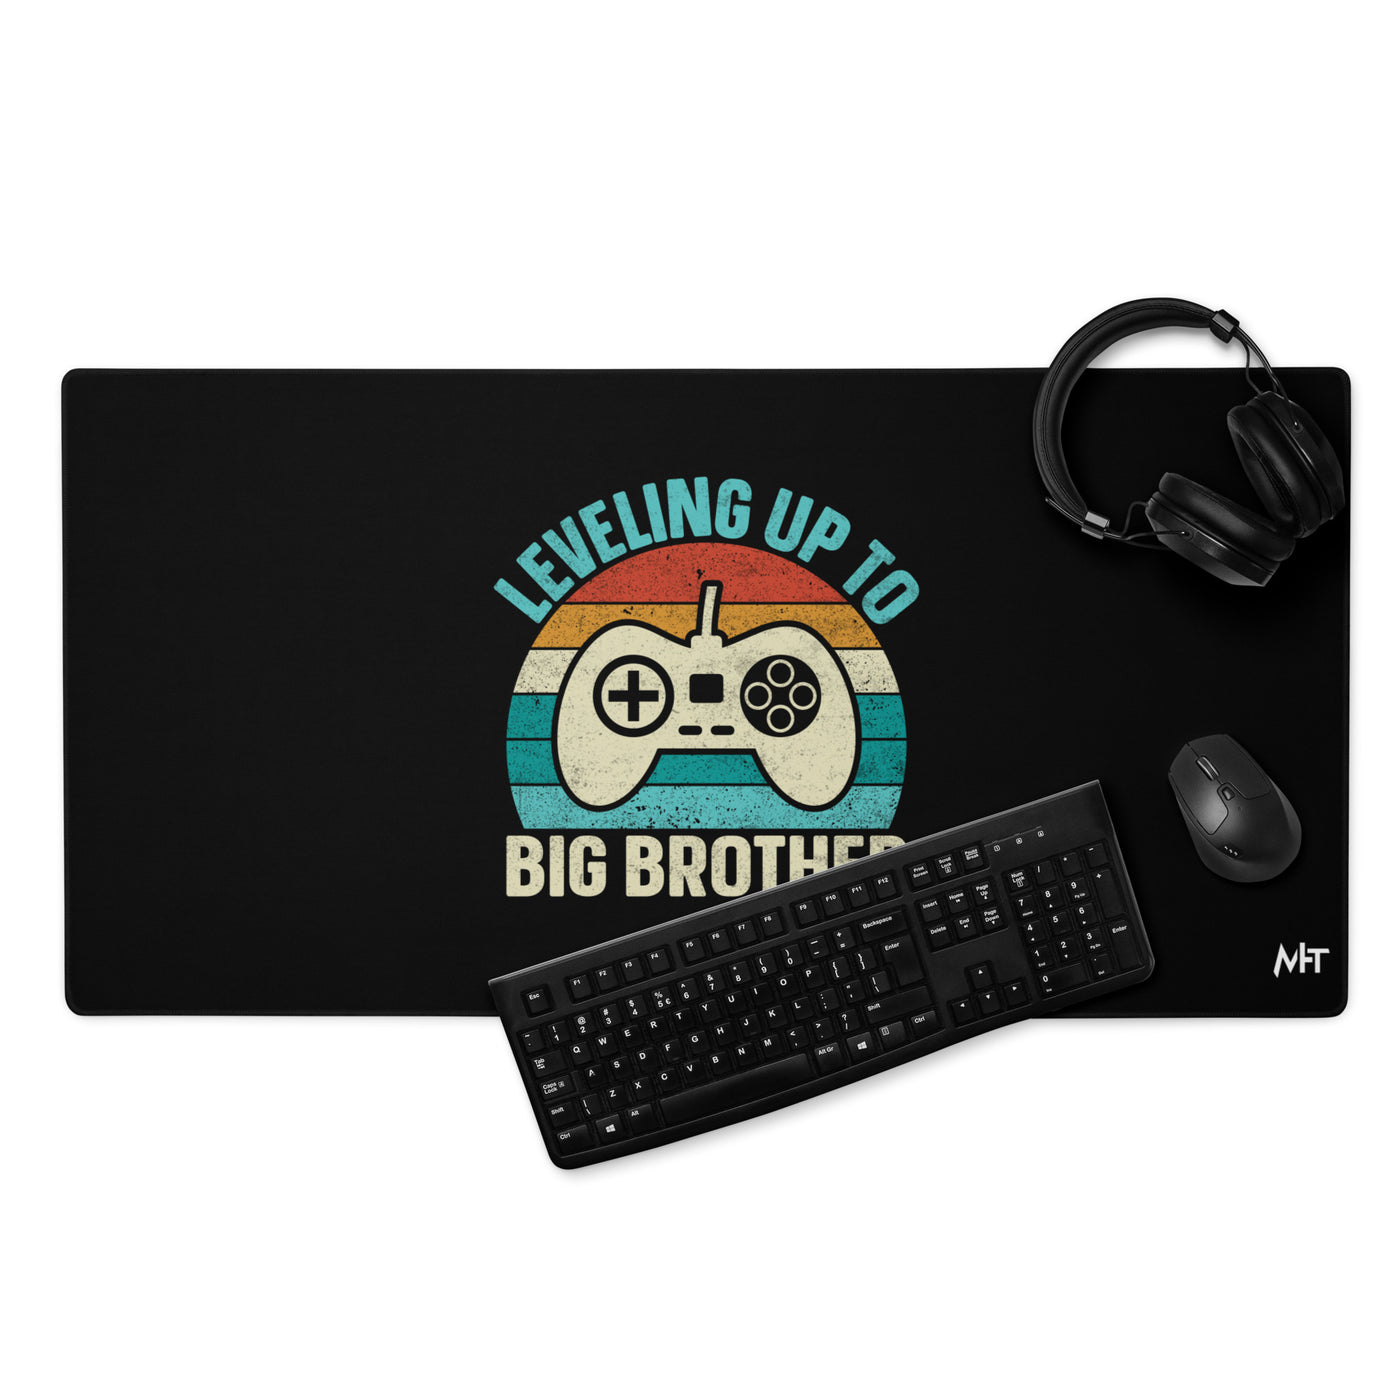 Levelling up to Big Brother V2 - Desk Mat